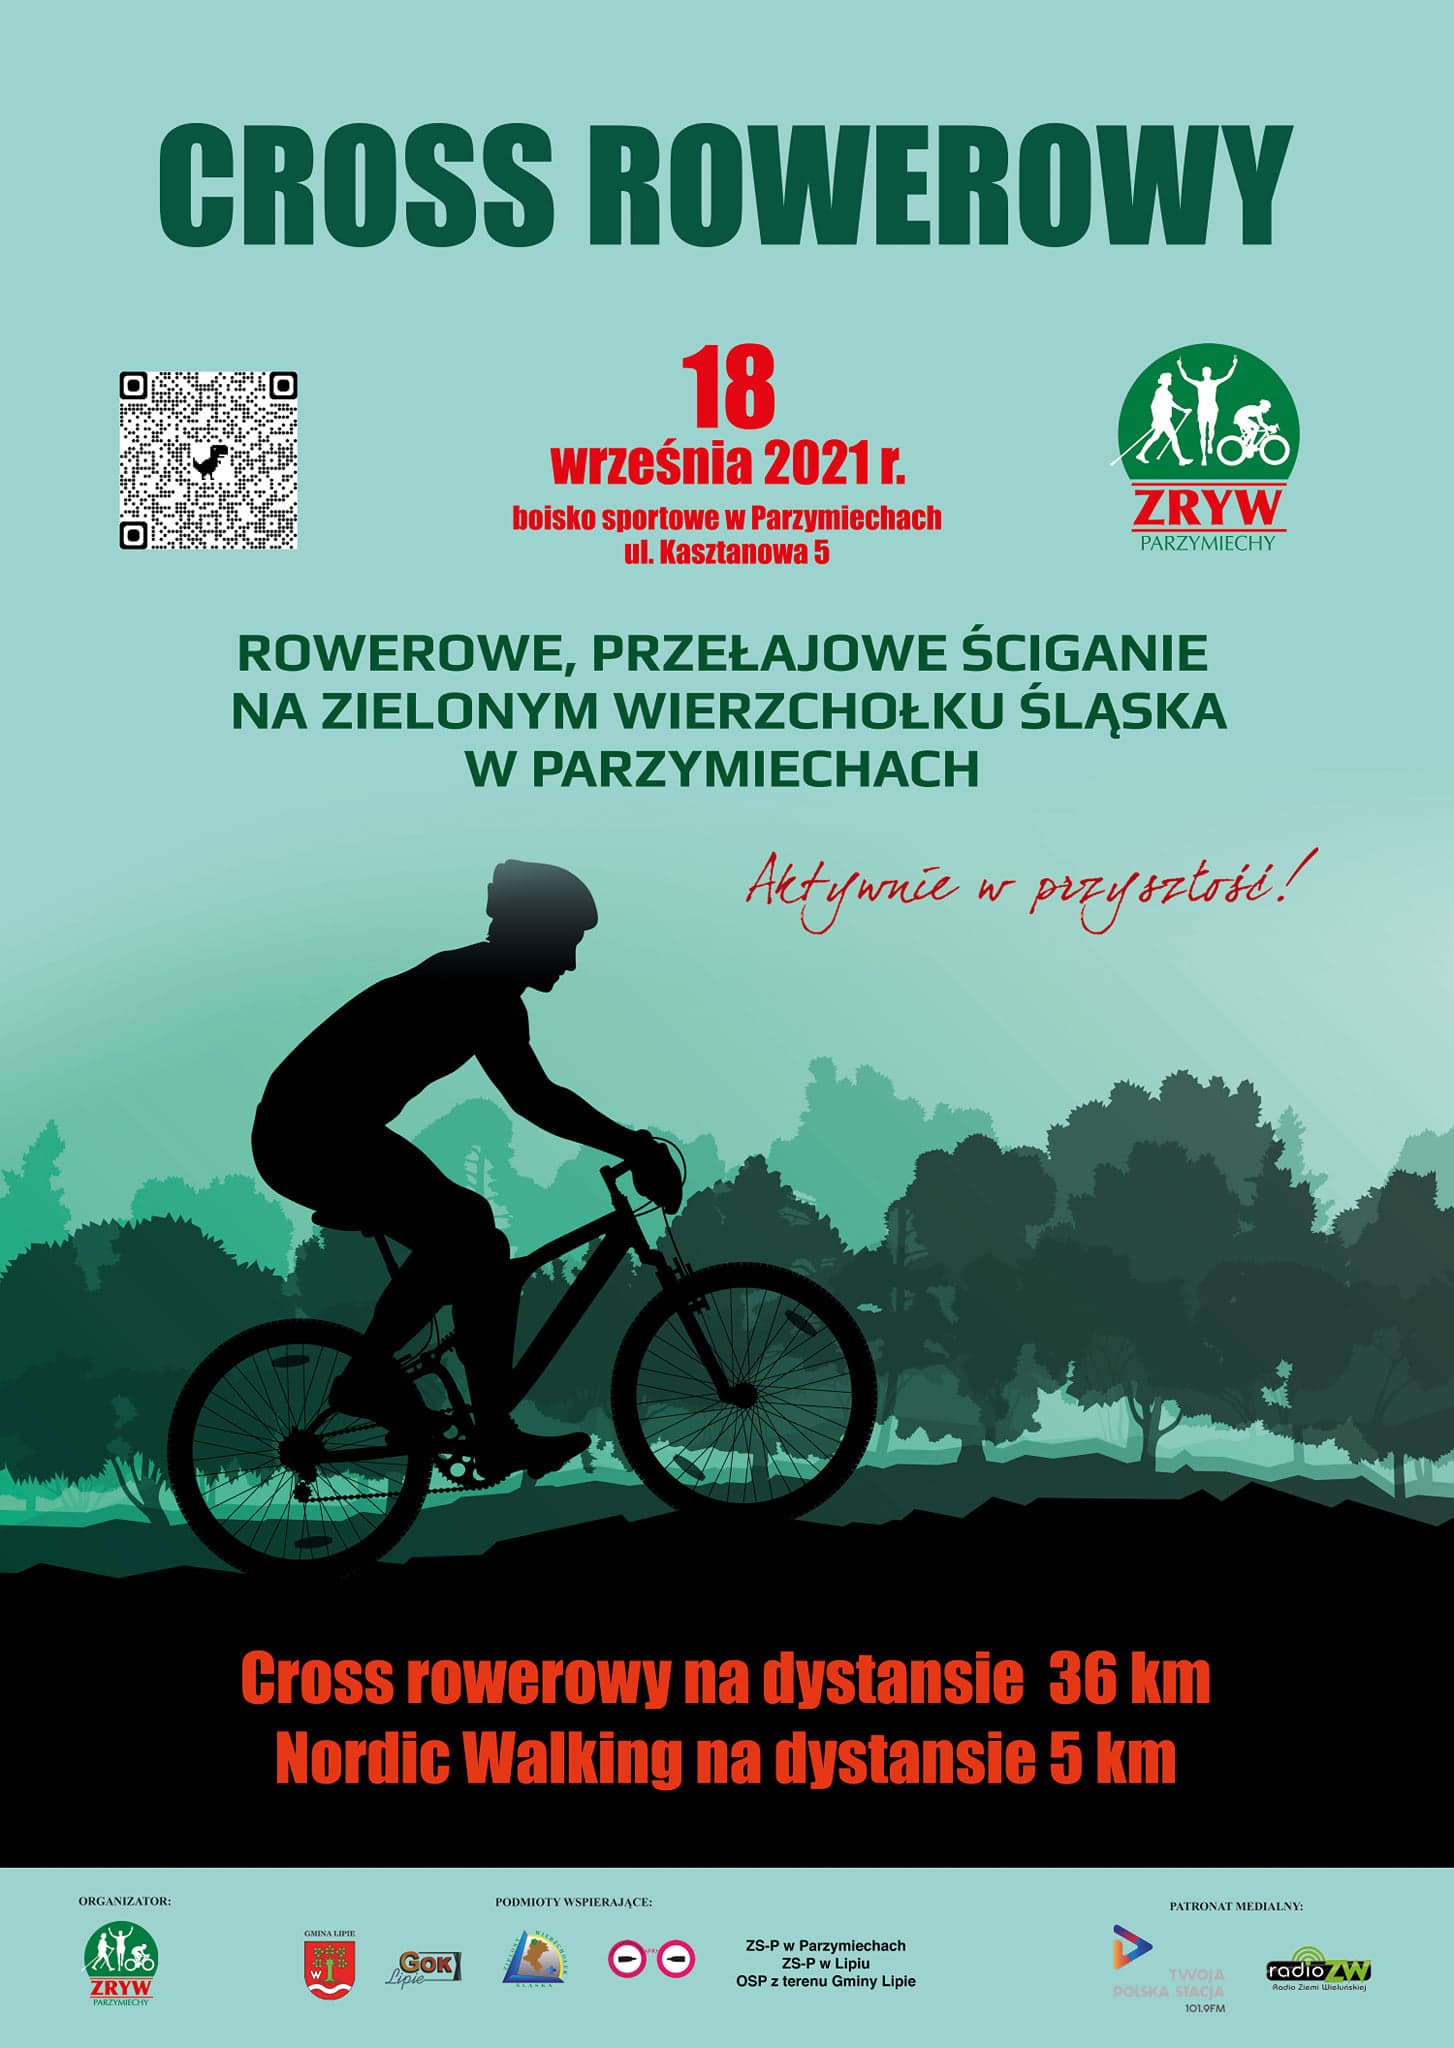 Przełajowe Ściganie Na Zielonym Wierzchołku Śląska w Parzymiechach (cross rowerowy)